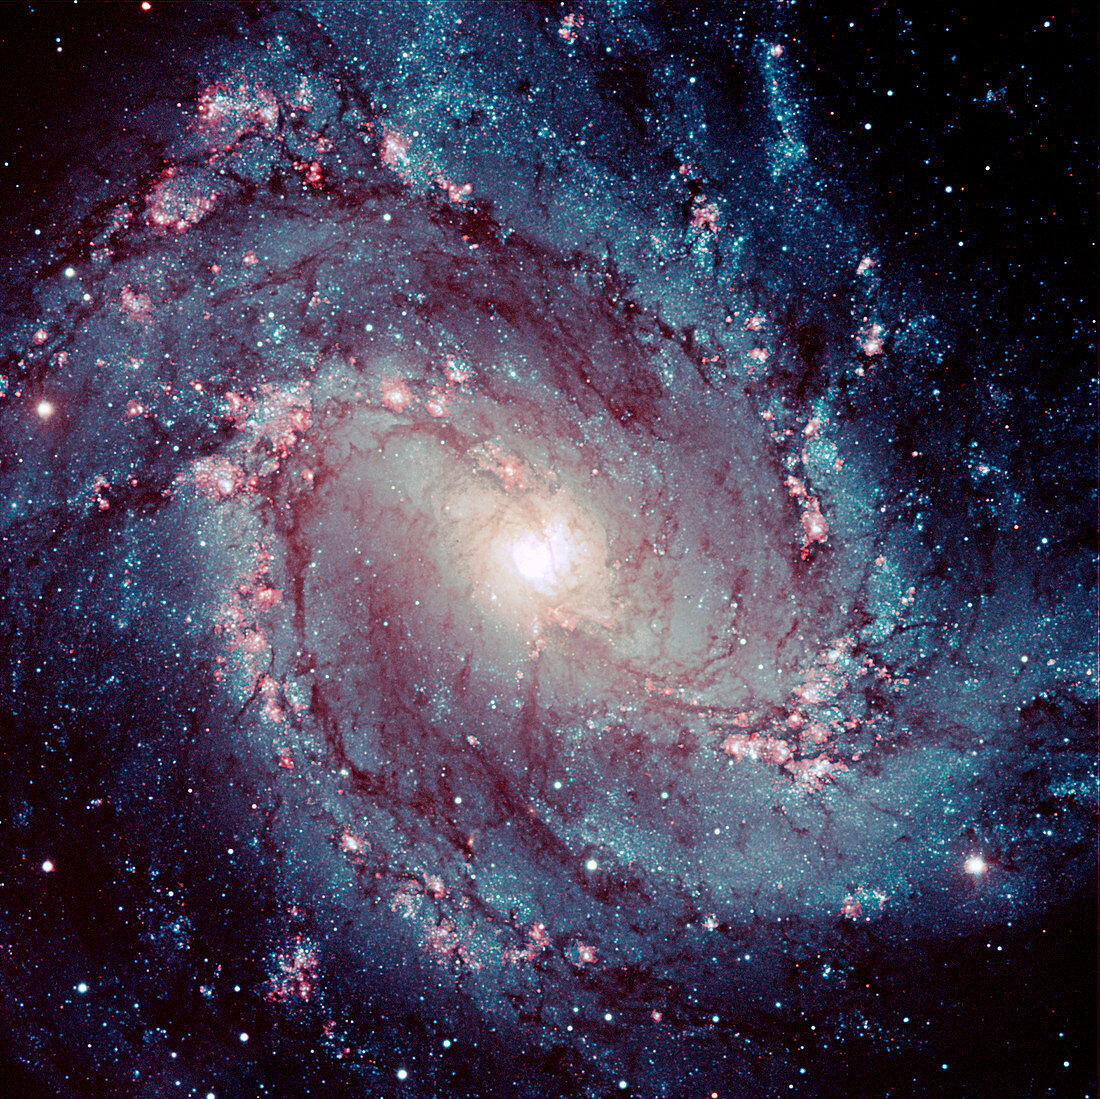 Spiral galaxy M83